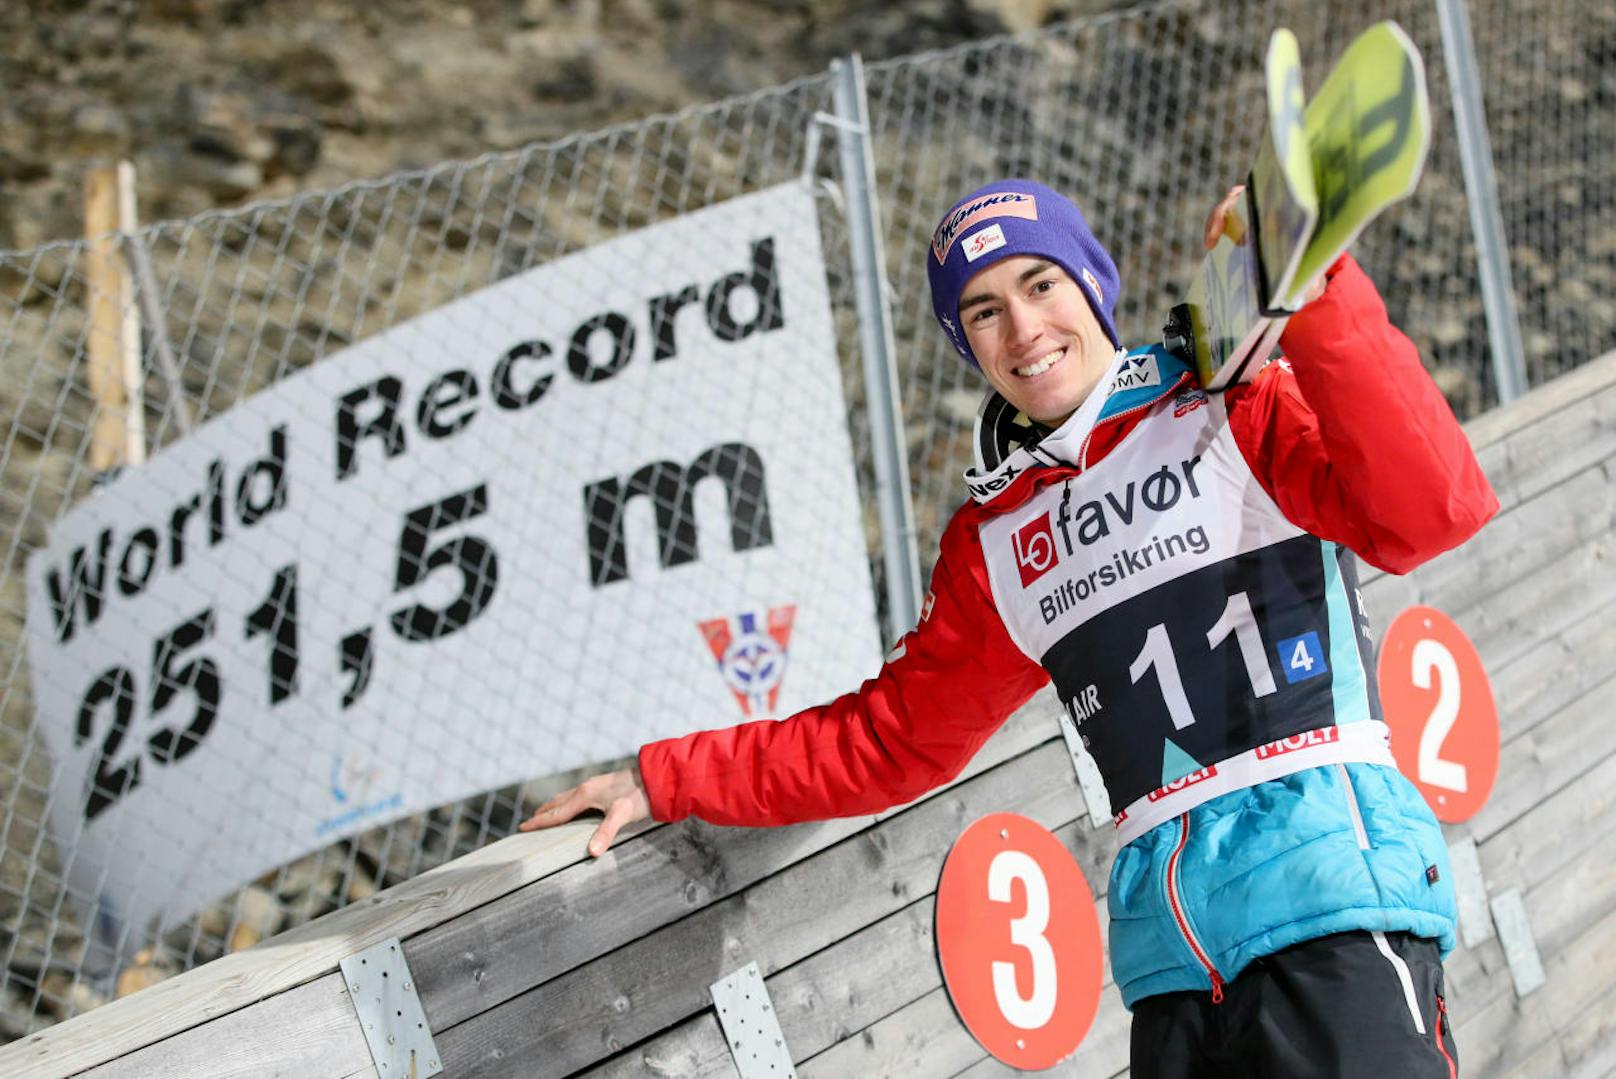 Mit 253,5 Metern (nicht vom Bild irritieren lassen!) stellte Kraft dabei einen neuen Monster-Weltrekord im Skifliegen auf.